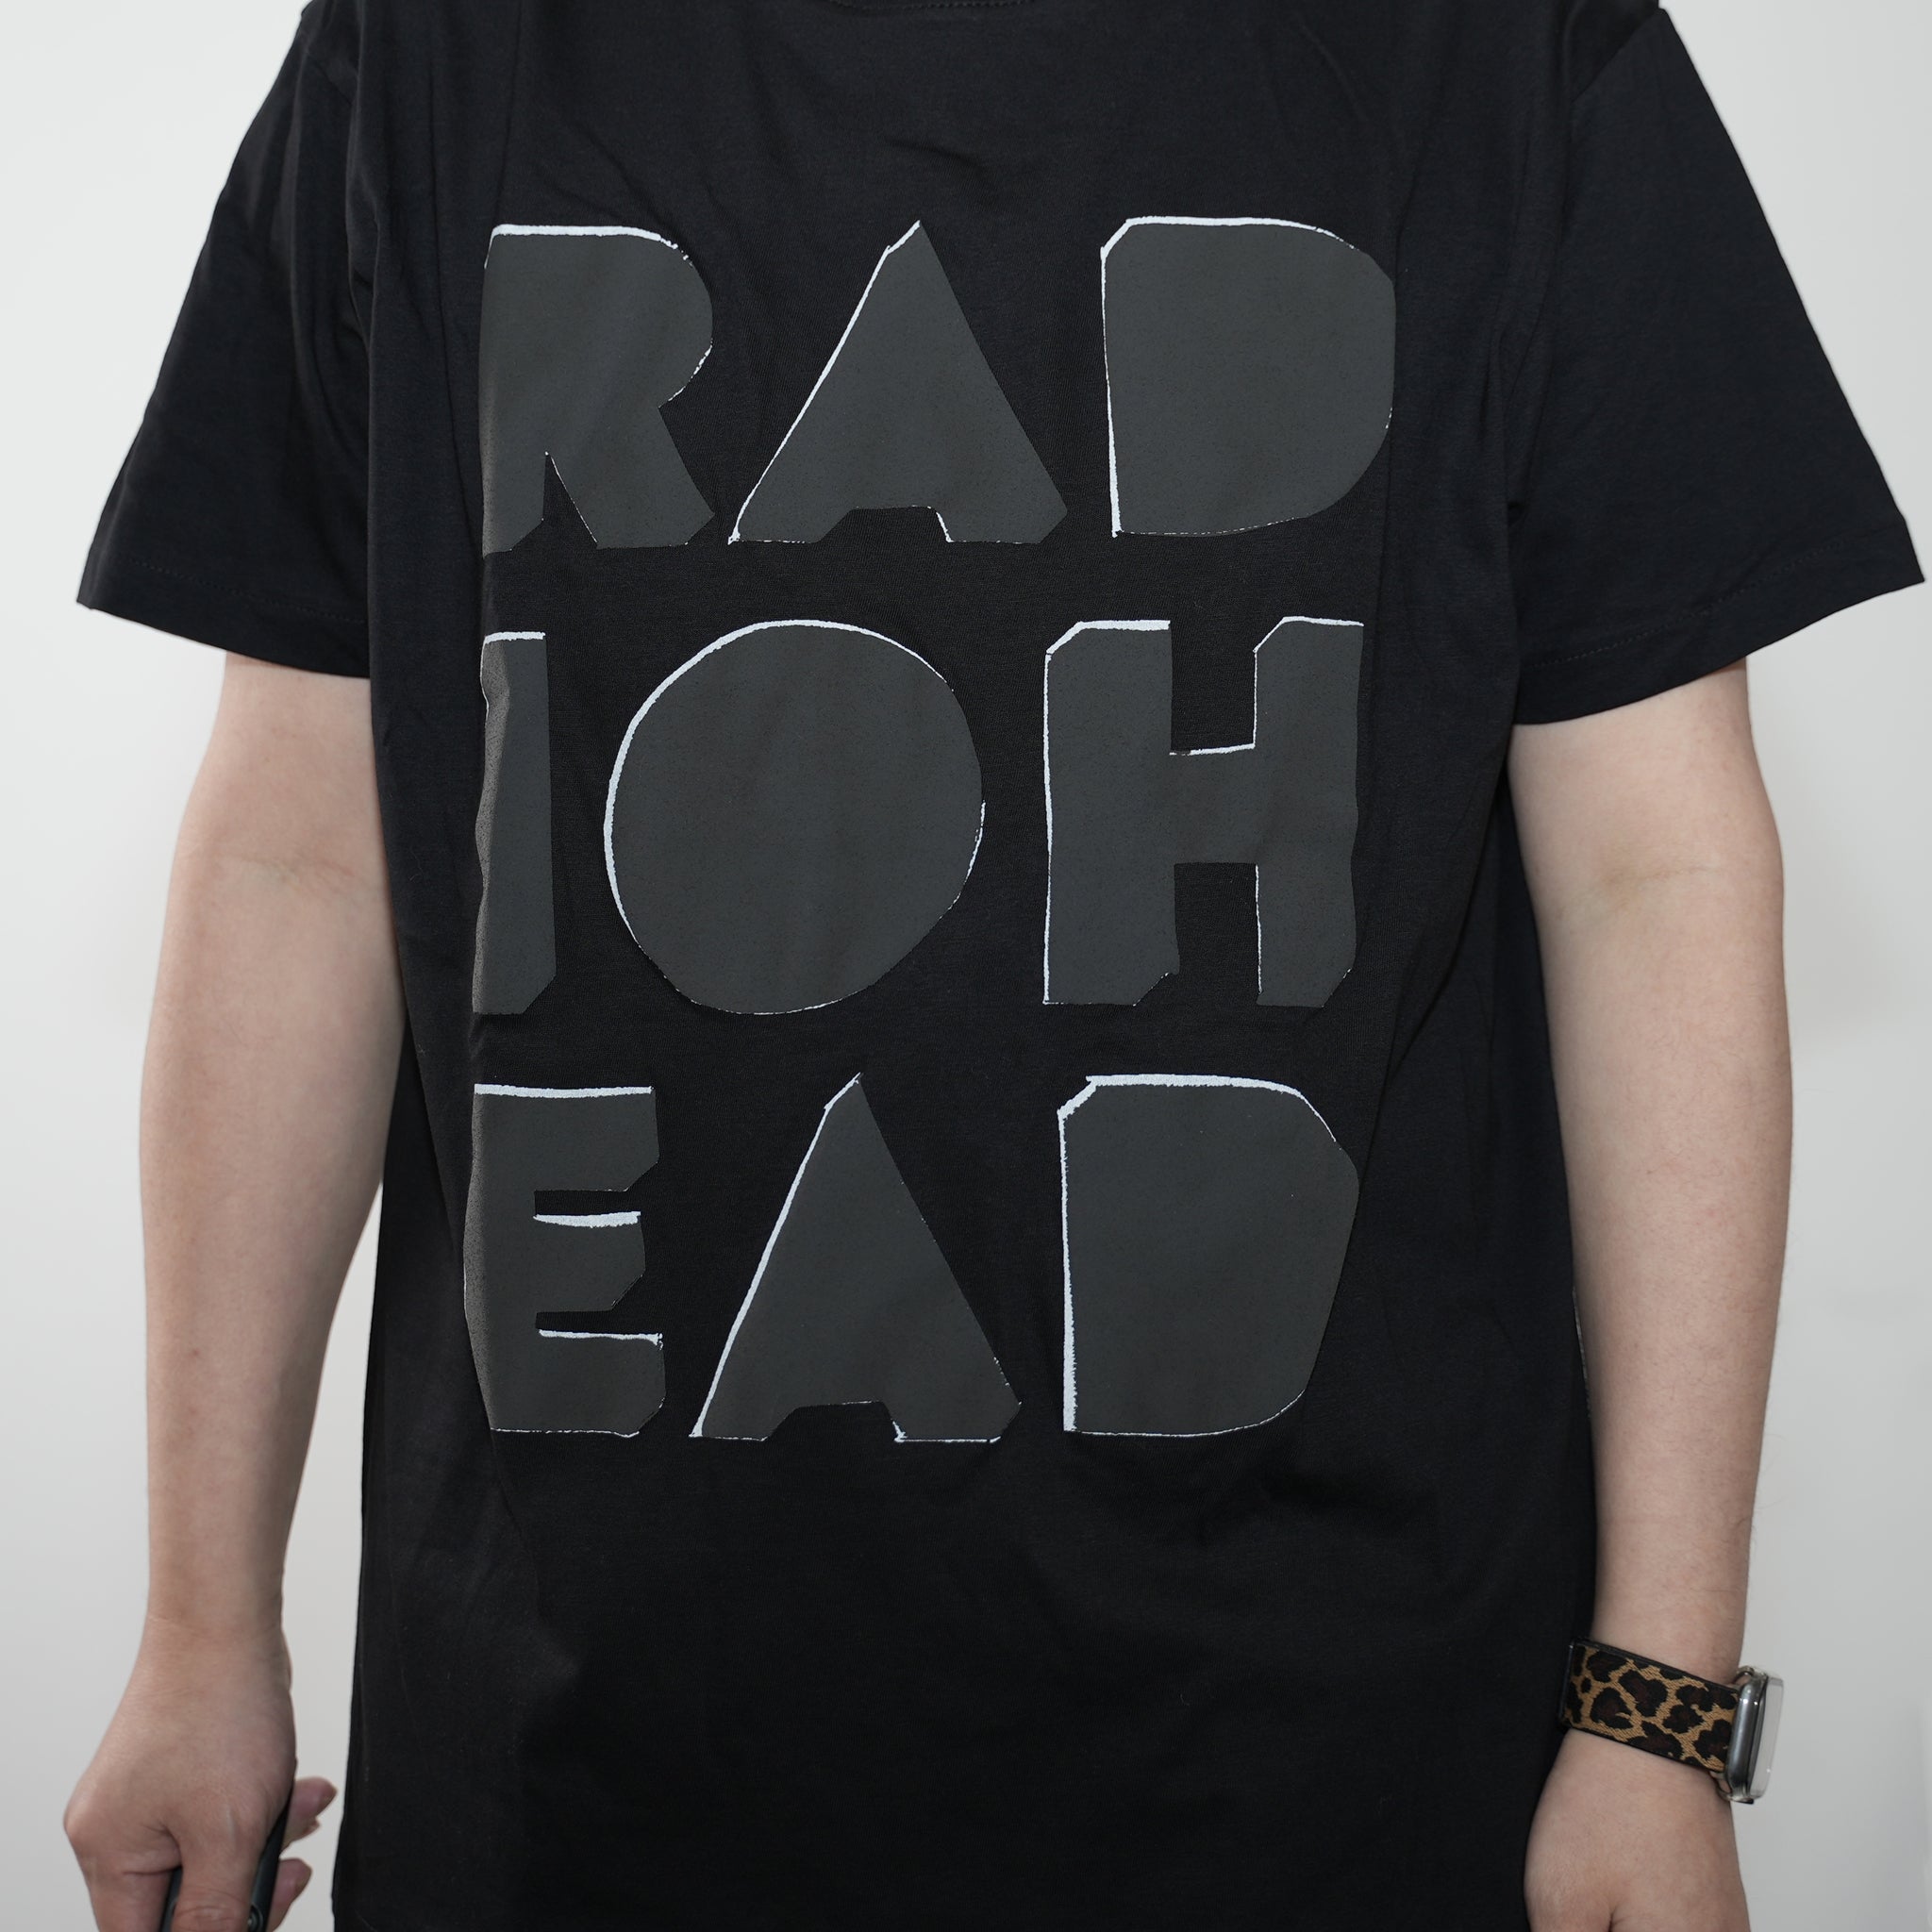 No:RHTS11MB03 | Name:Radiohead_Debossed Note Pad | Color:Black | Size:L【Radiohead】【CULTURE TEE】【ネコポス選択可能】